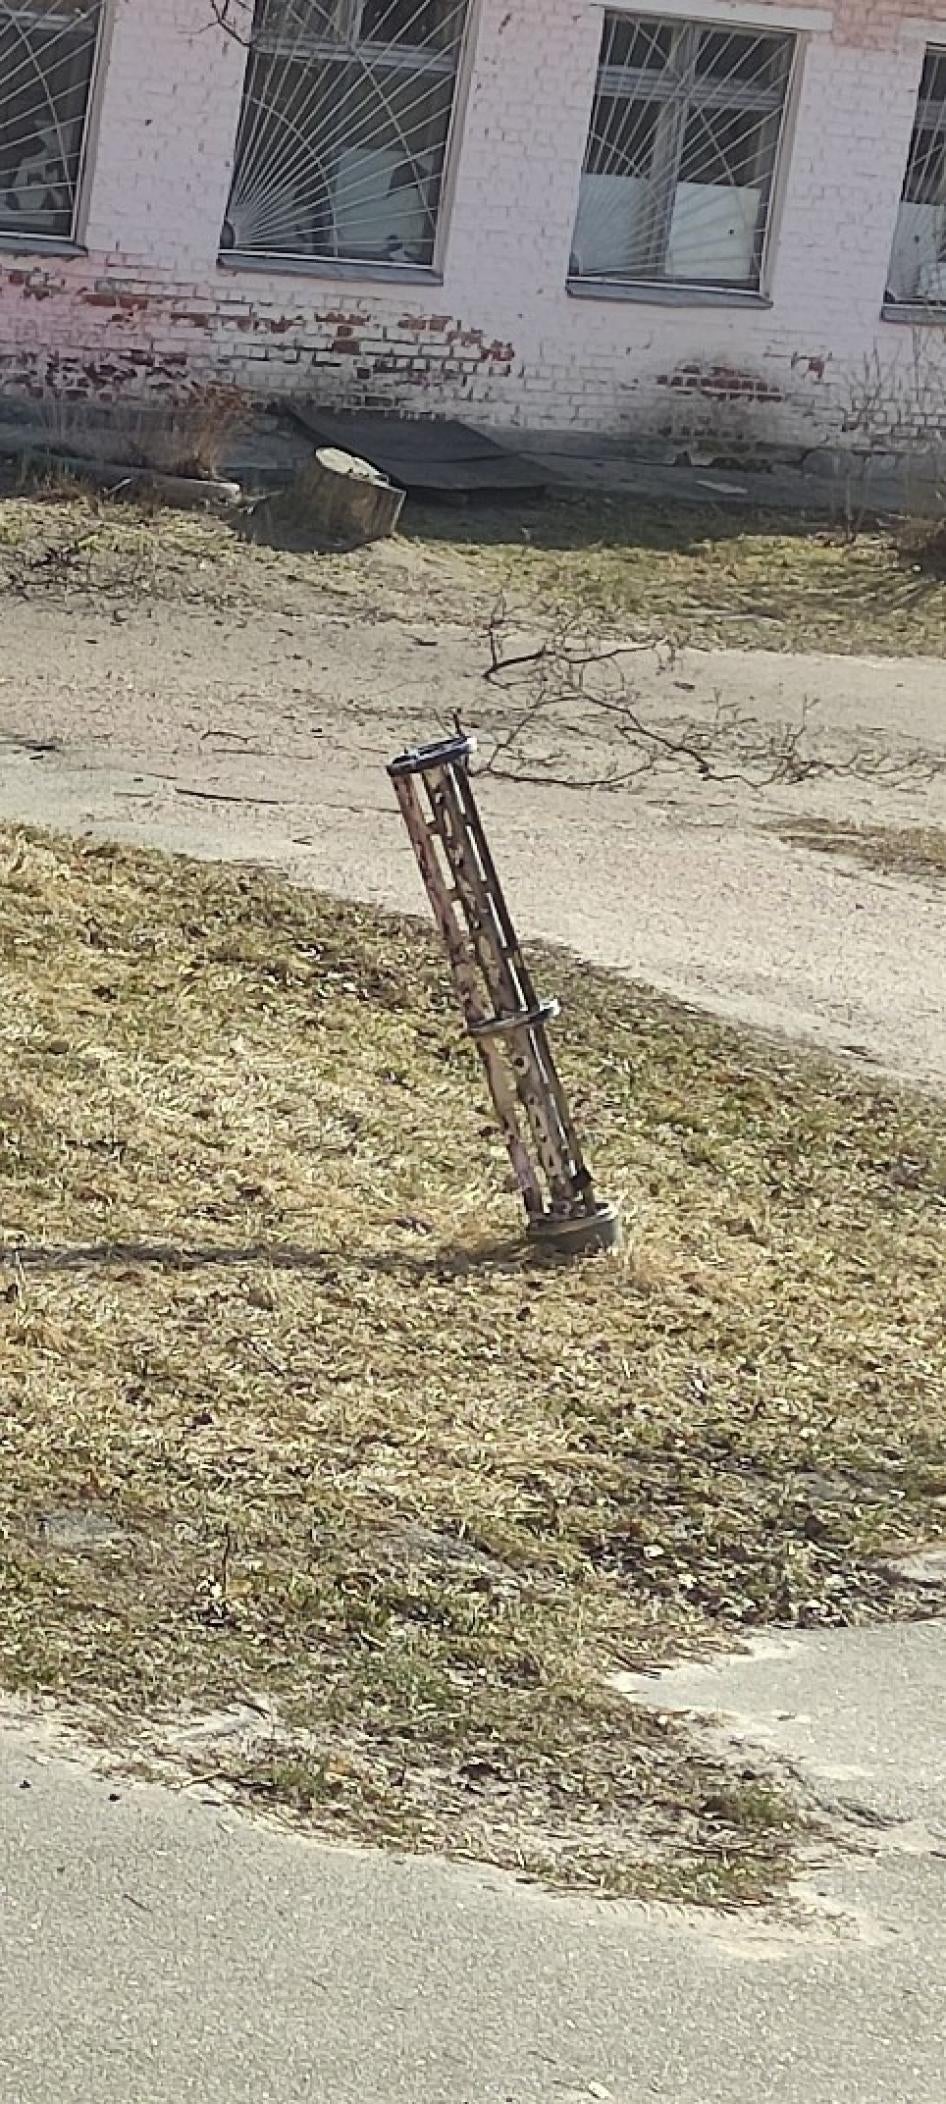 La section cargo d'une roquette à sous-munitions Uragan, retrouvée près de l'Hôpital régional pour enfants de Tchernihiv, en Ukraine, peu après l’attaque russe menée le 17 mars 2022.